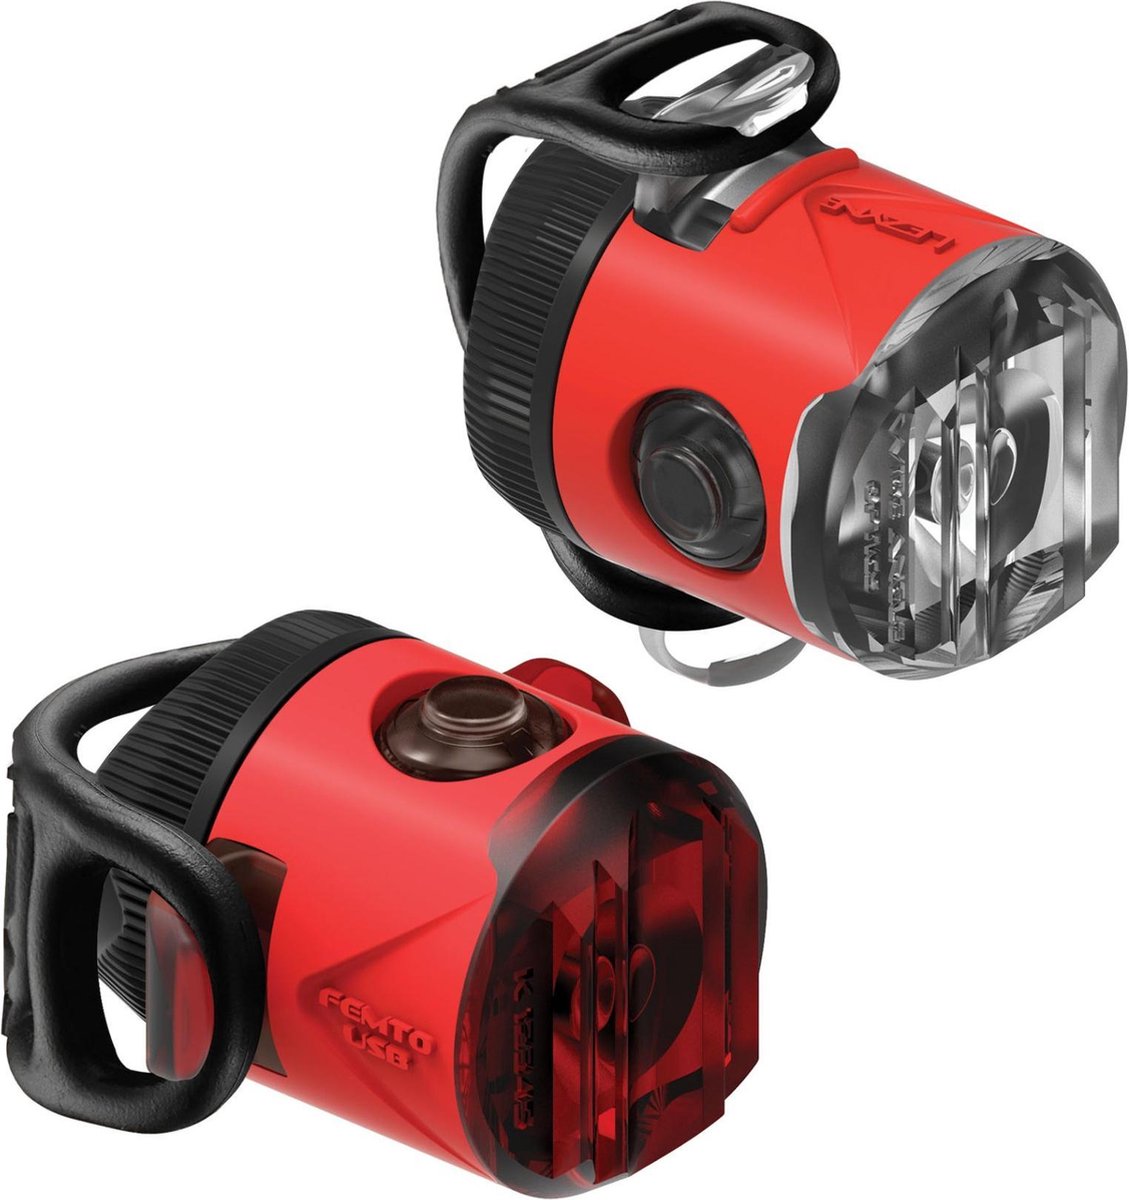 Lezyne Femto USB Drive Front Koplamp – Fietslamp – Fiets koplamp – Fiets verlichting – Veiligheidslampje – 4 knipperstanden – 15 lumen – 2 Stuks – Rood